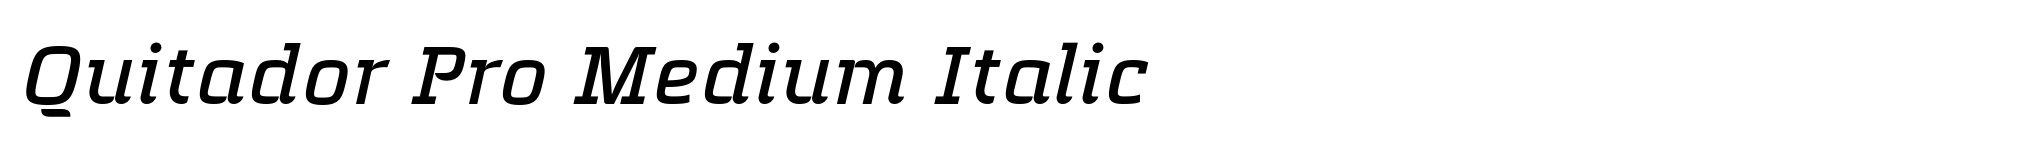 Quitador Pro Medium Italic image